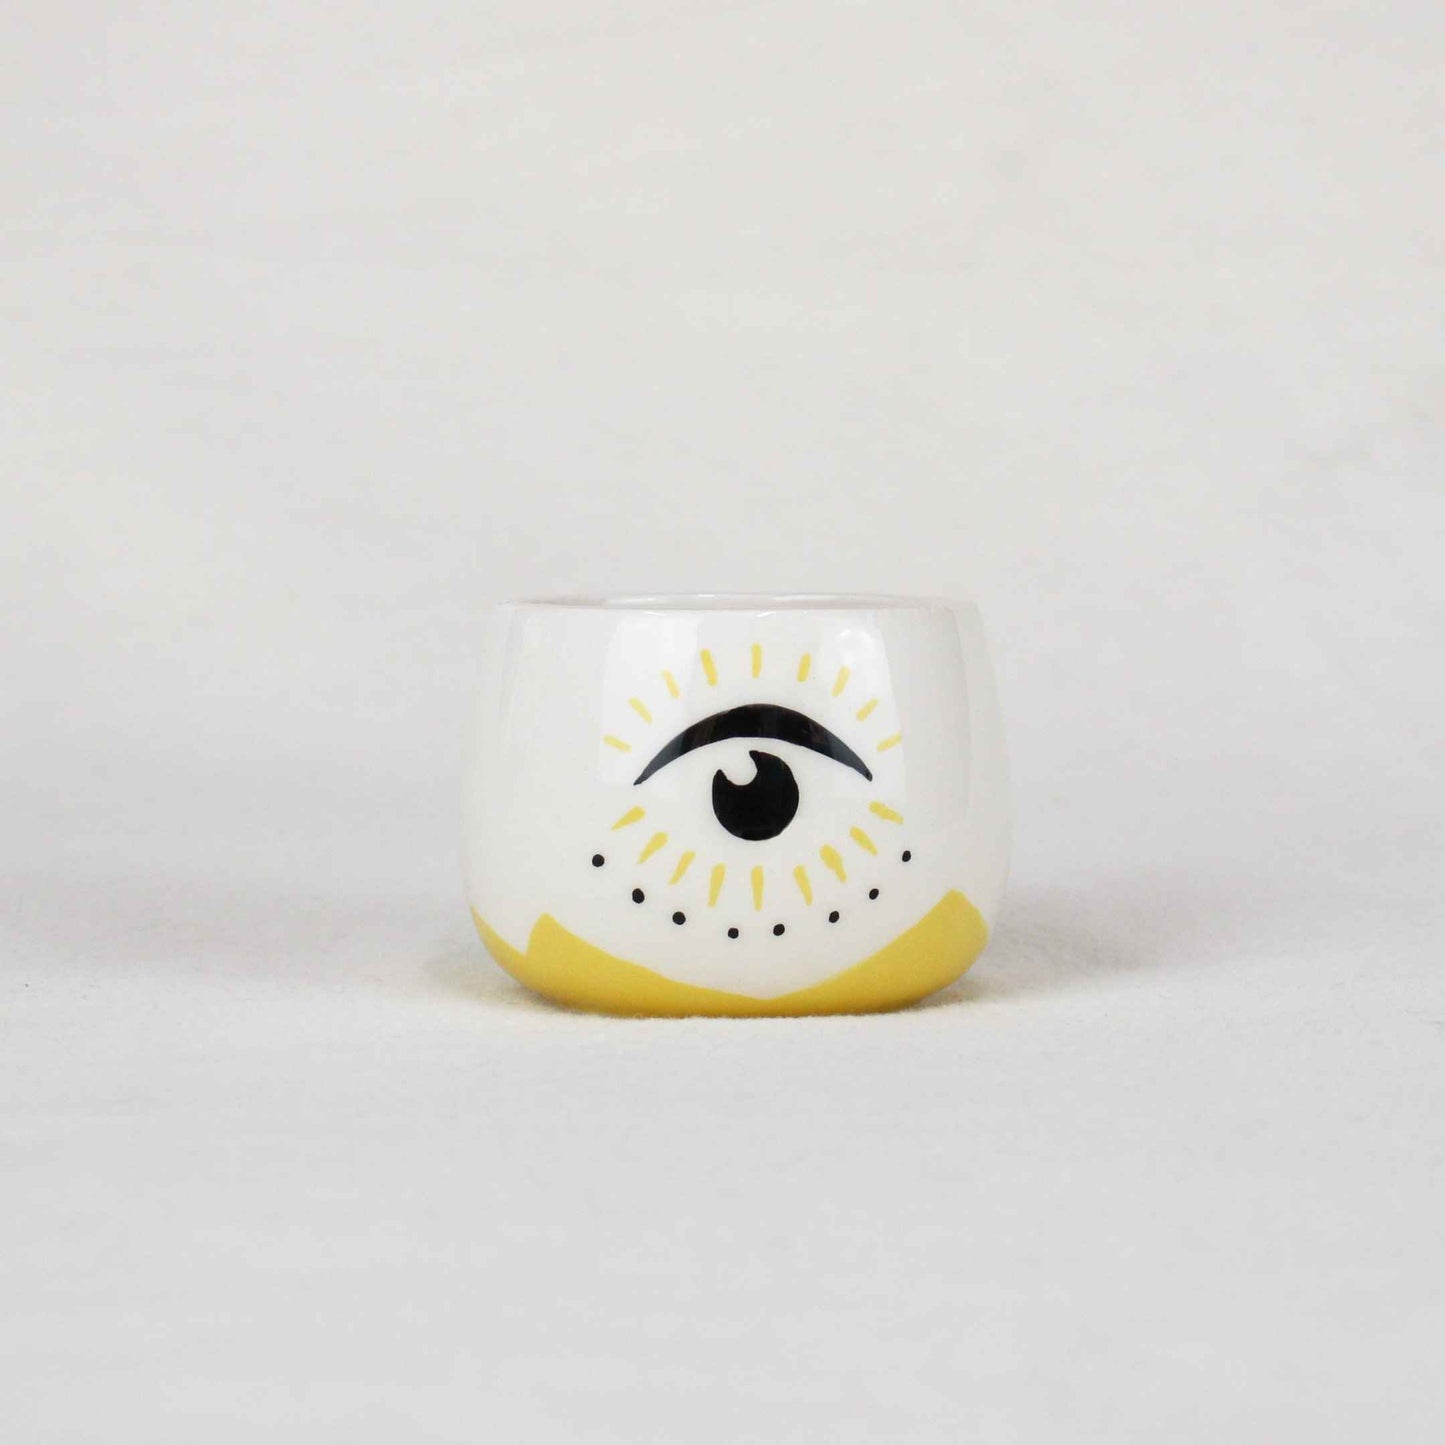 "Look" Small Ceramic Glass, Design Ceramic Kitchenware